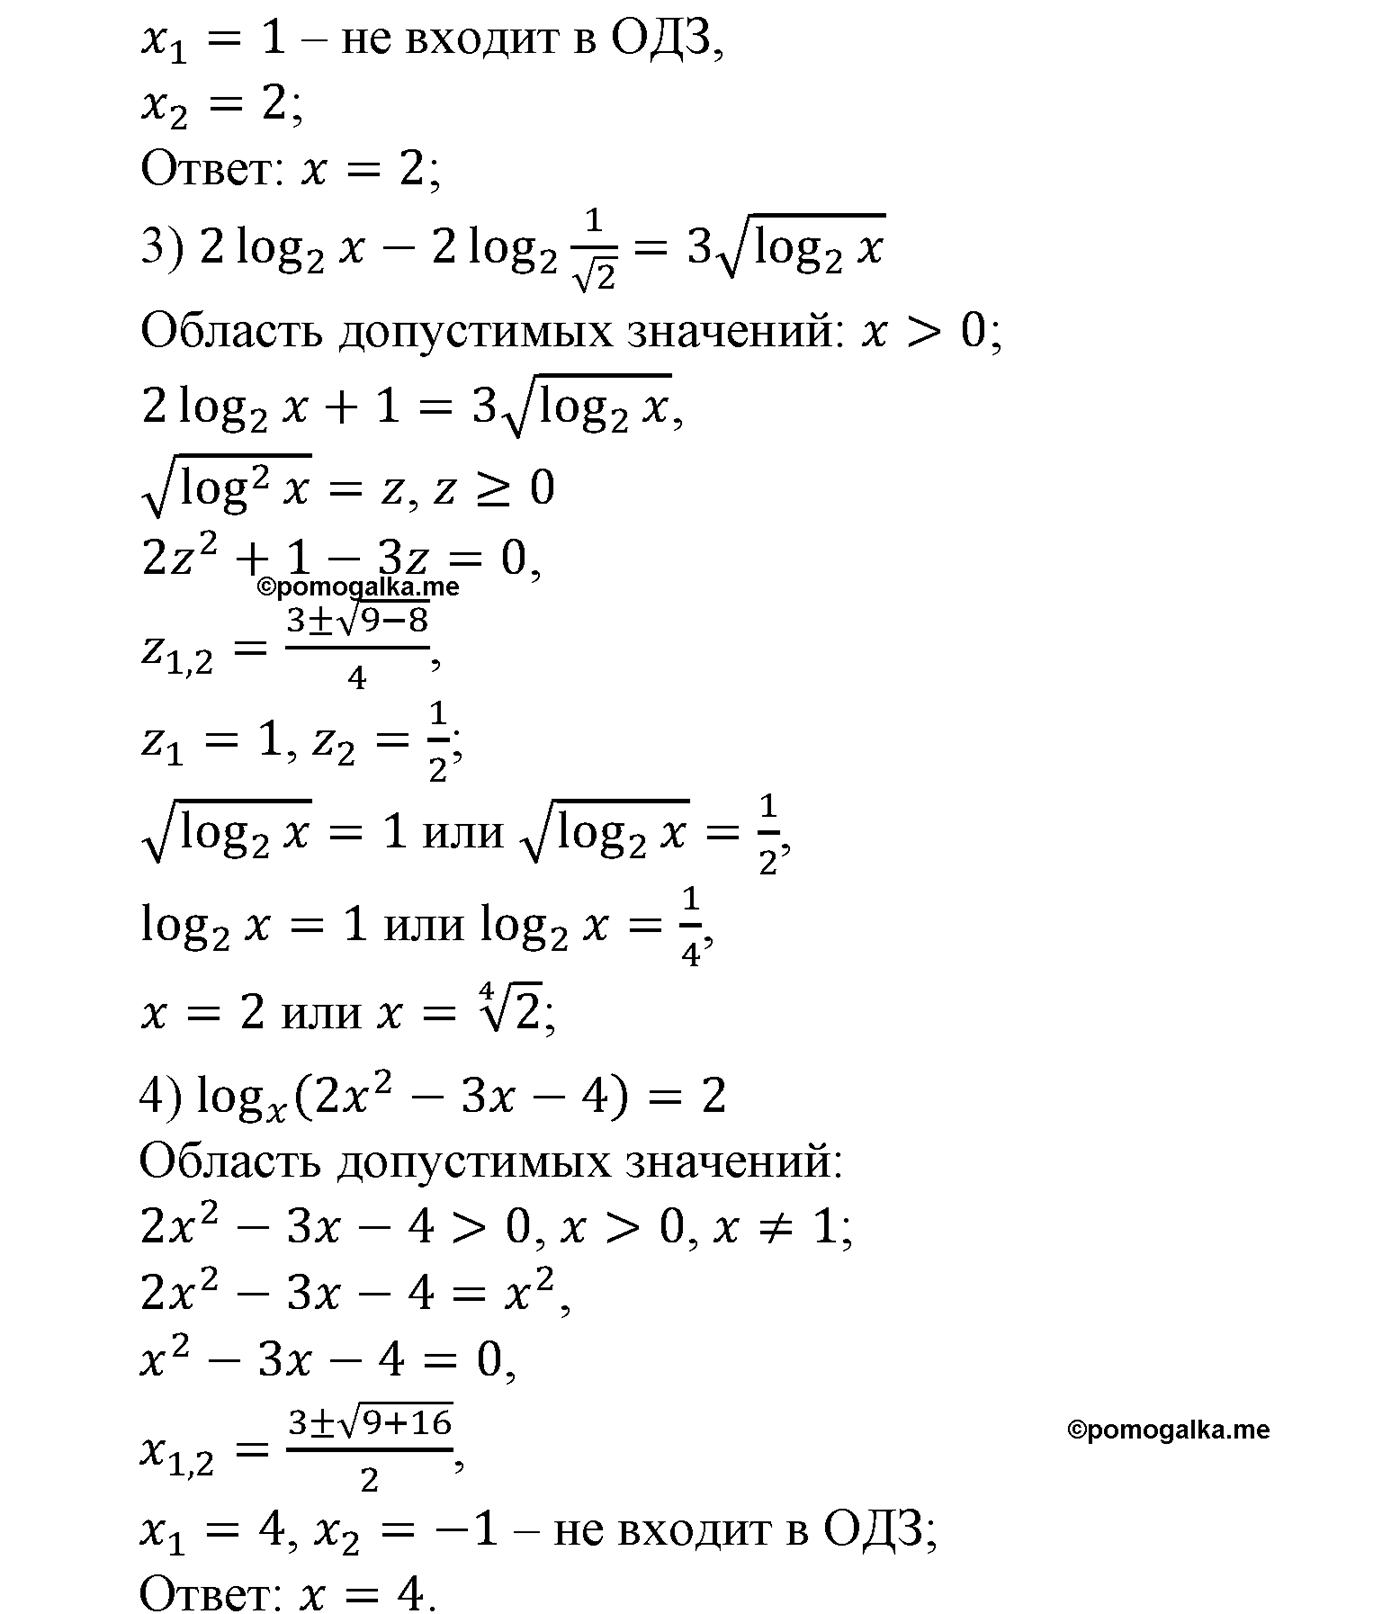 разбор задачи №1597 по алгебре за 10-11 класс из учебника Алимова, Колягина